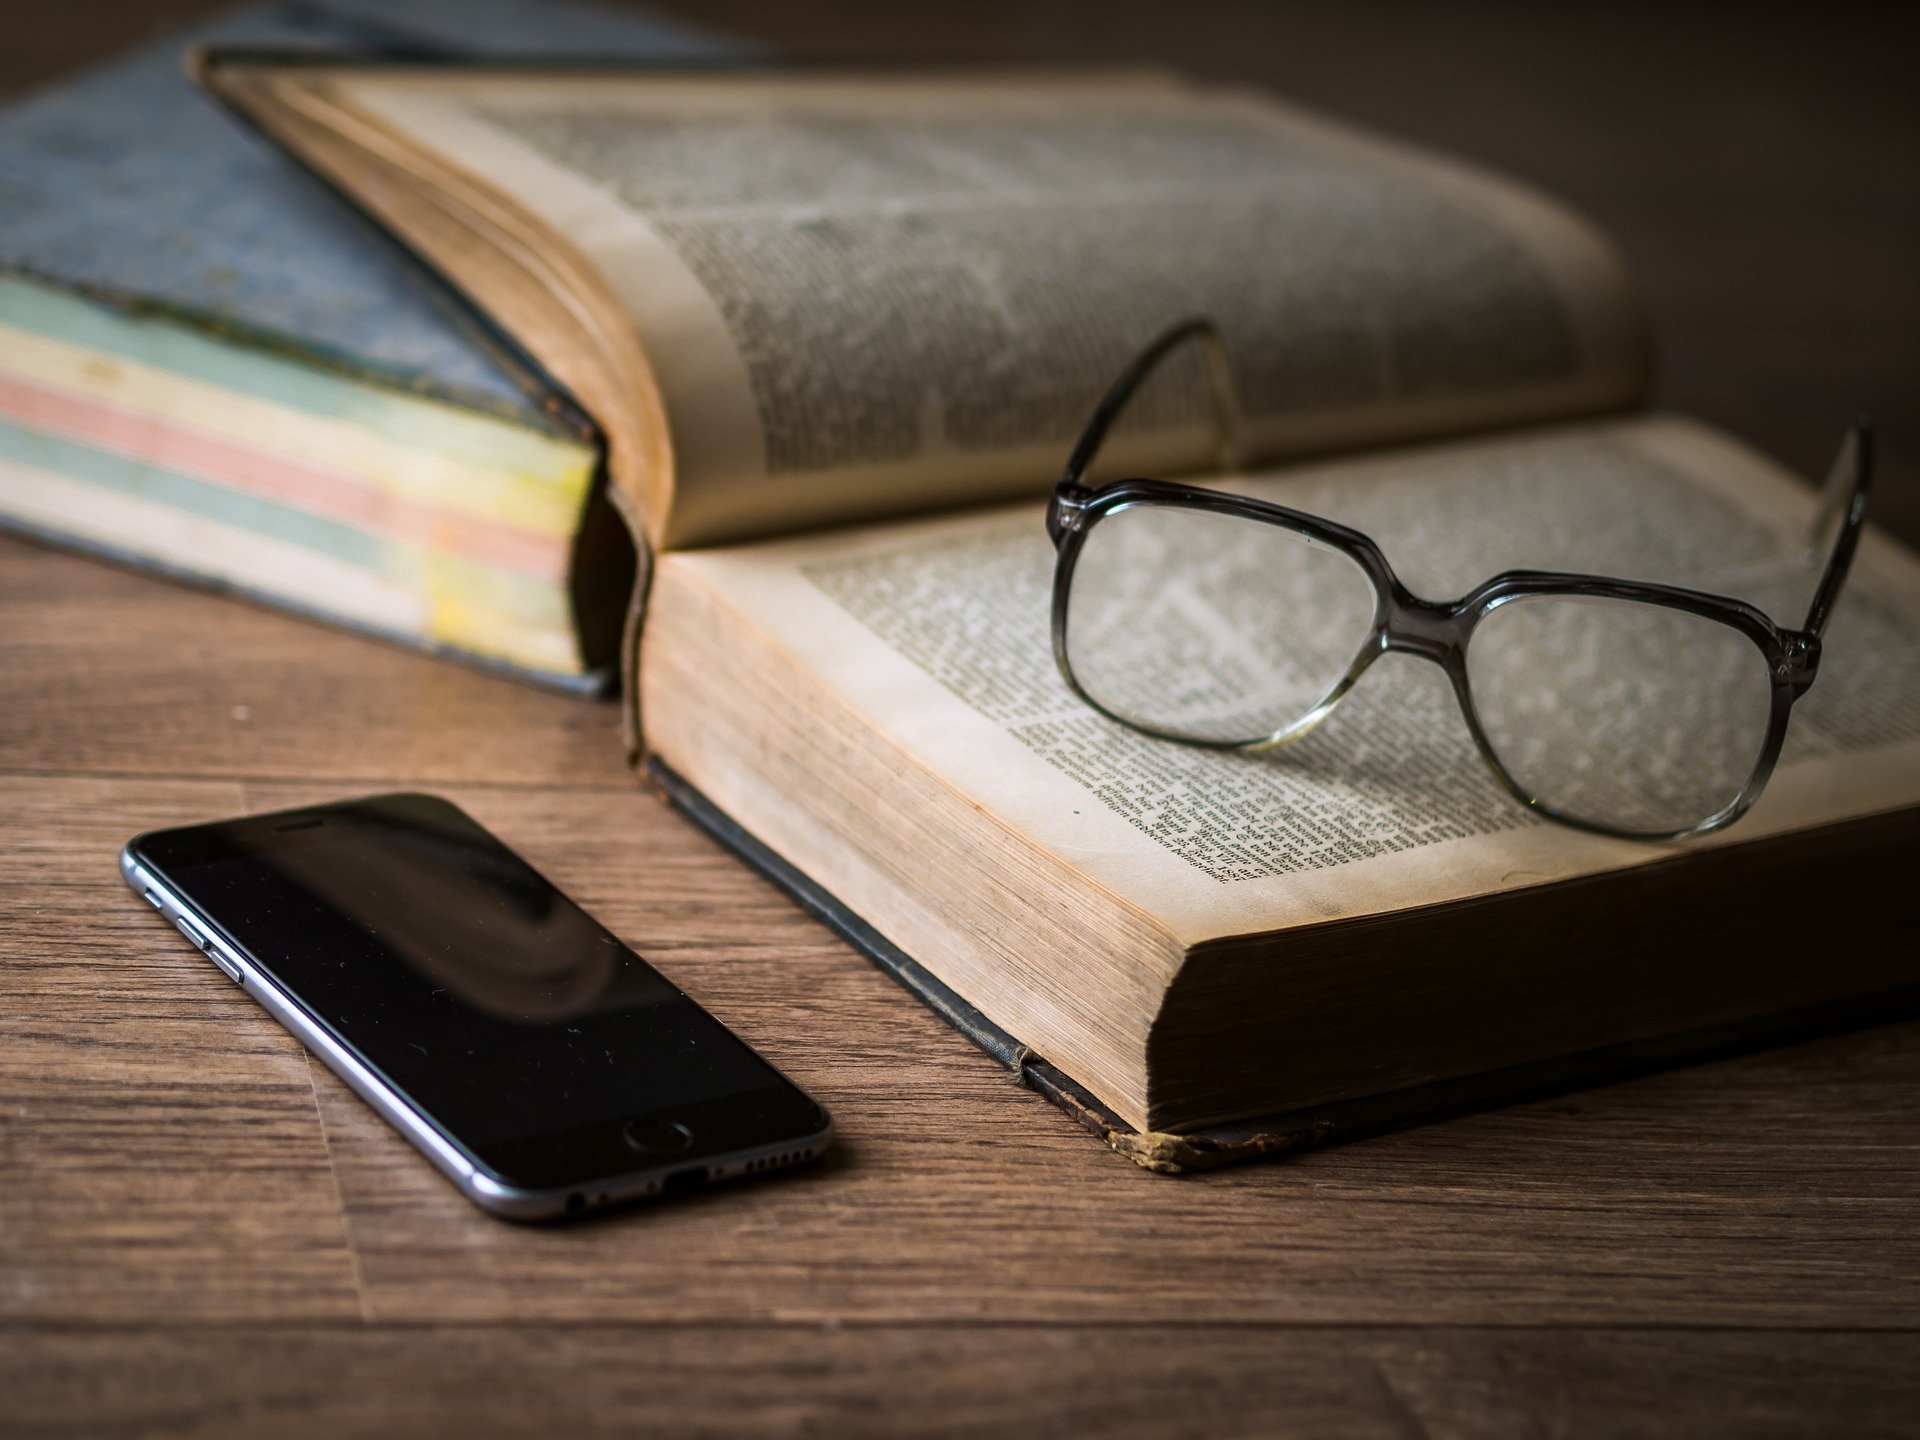 Um óculos em cima de um livro, e um celular ao lado.